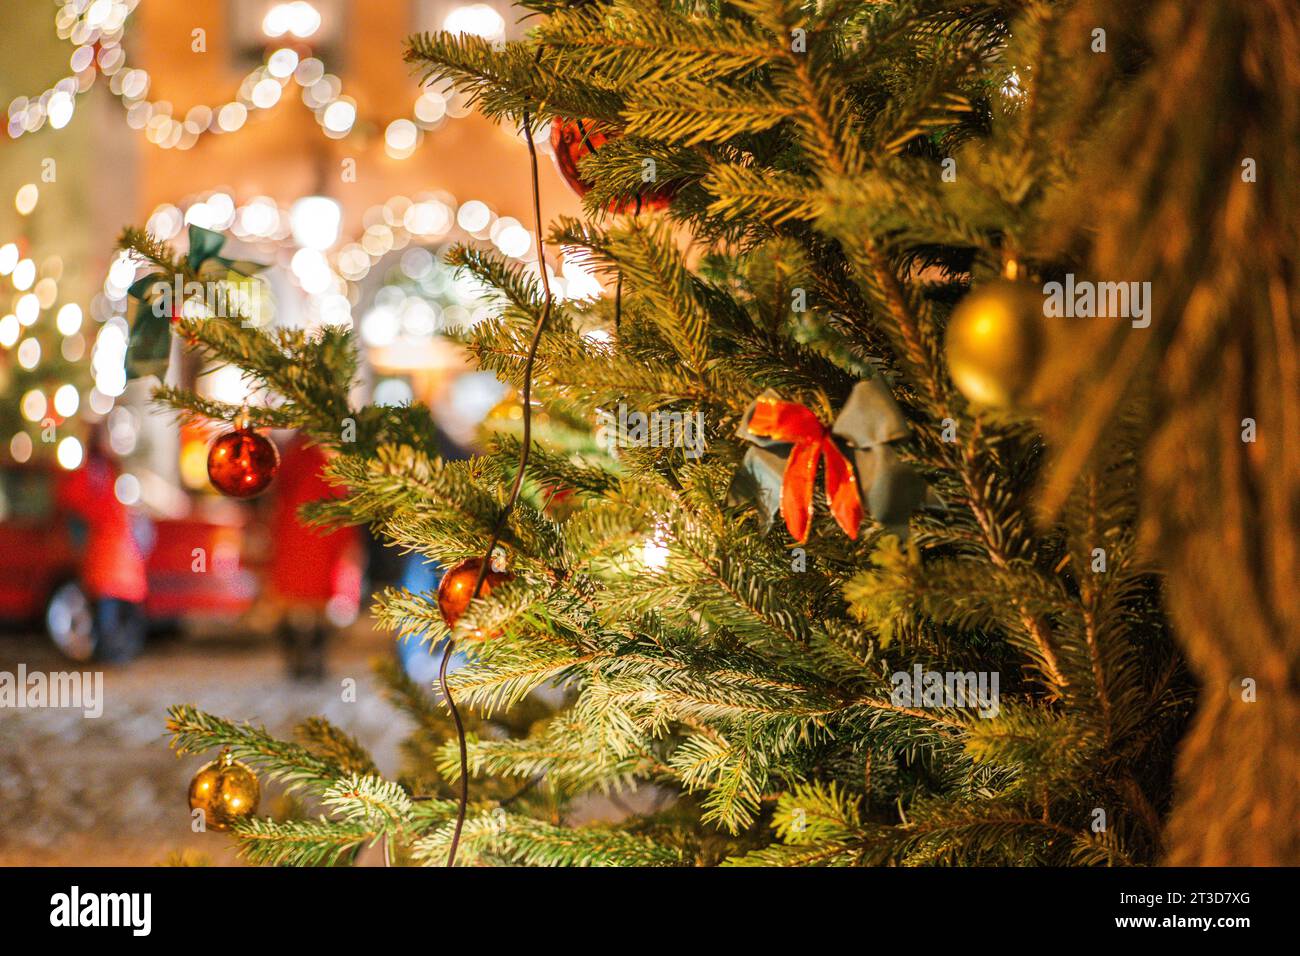 Weihnachtliche Stadt im Hintergrund. Weihnachtsbaum mit Girlanden und Menschen, die aus dem Blickfeld geraten Stockfoto